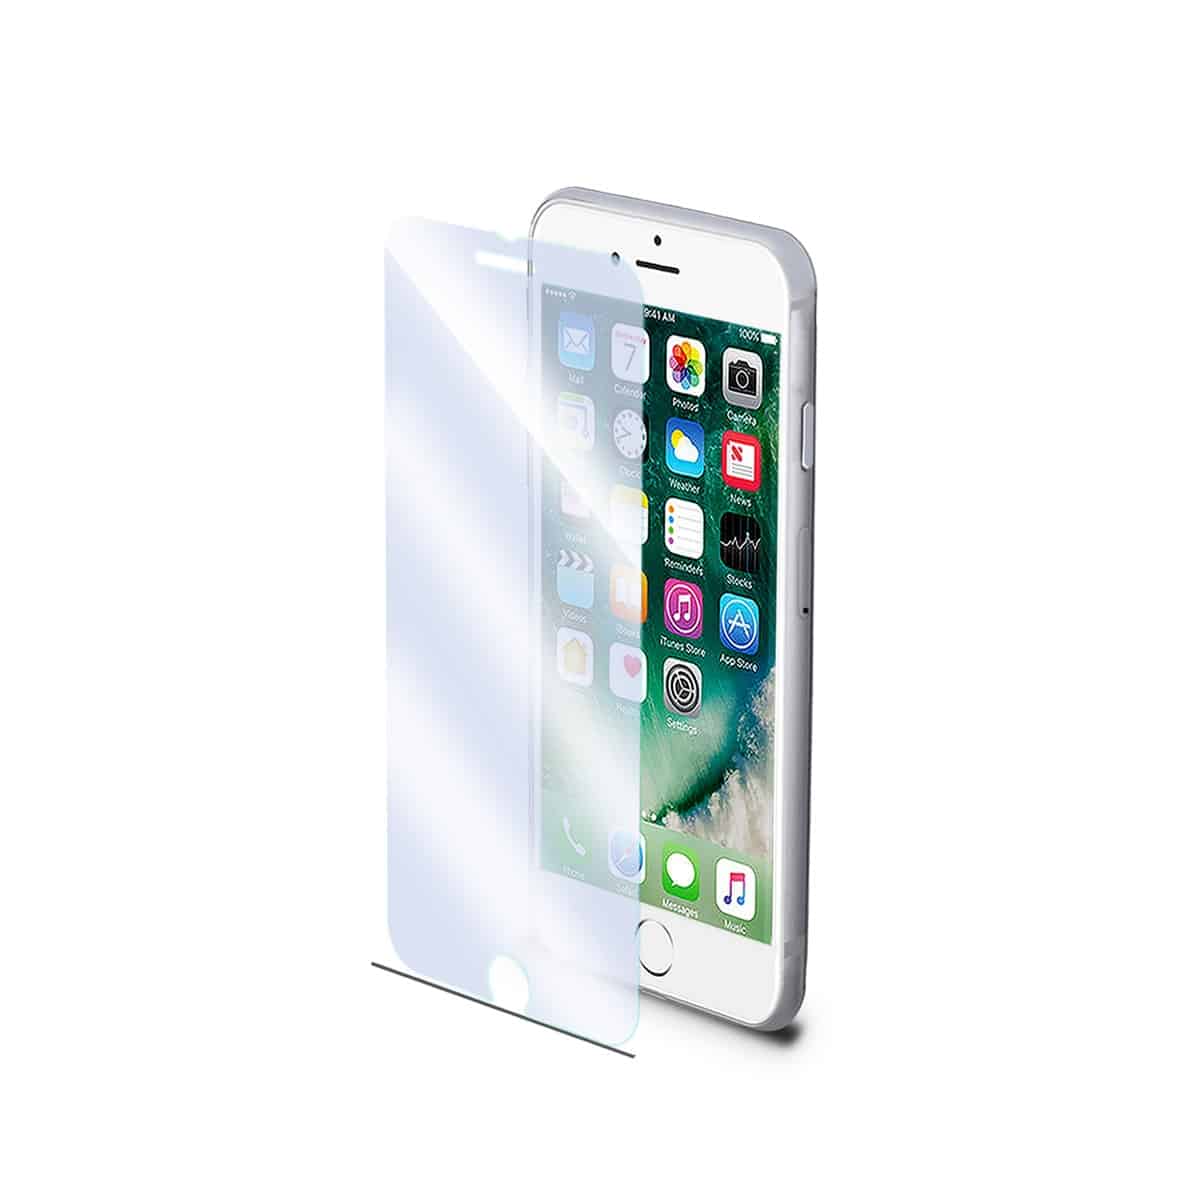 Protector de pantalla de vidrio templado Antiblurray Celly para iPhone 6/6s/7/8